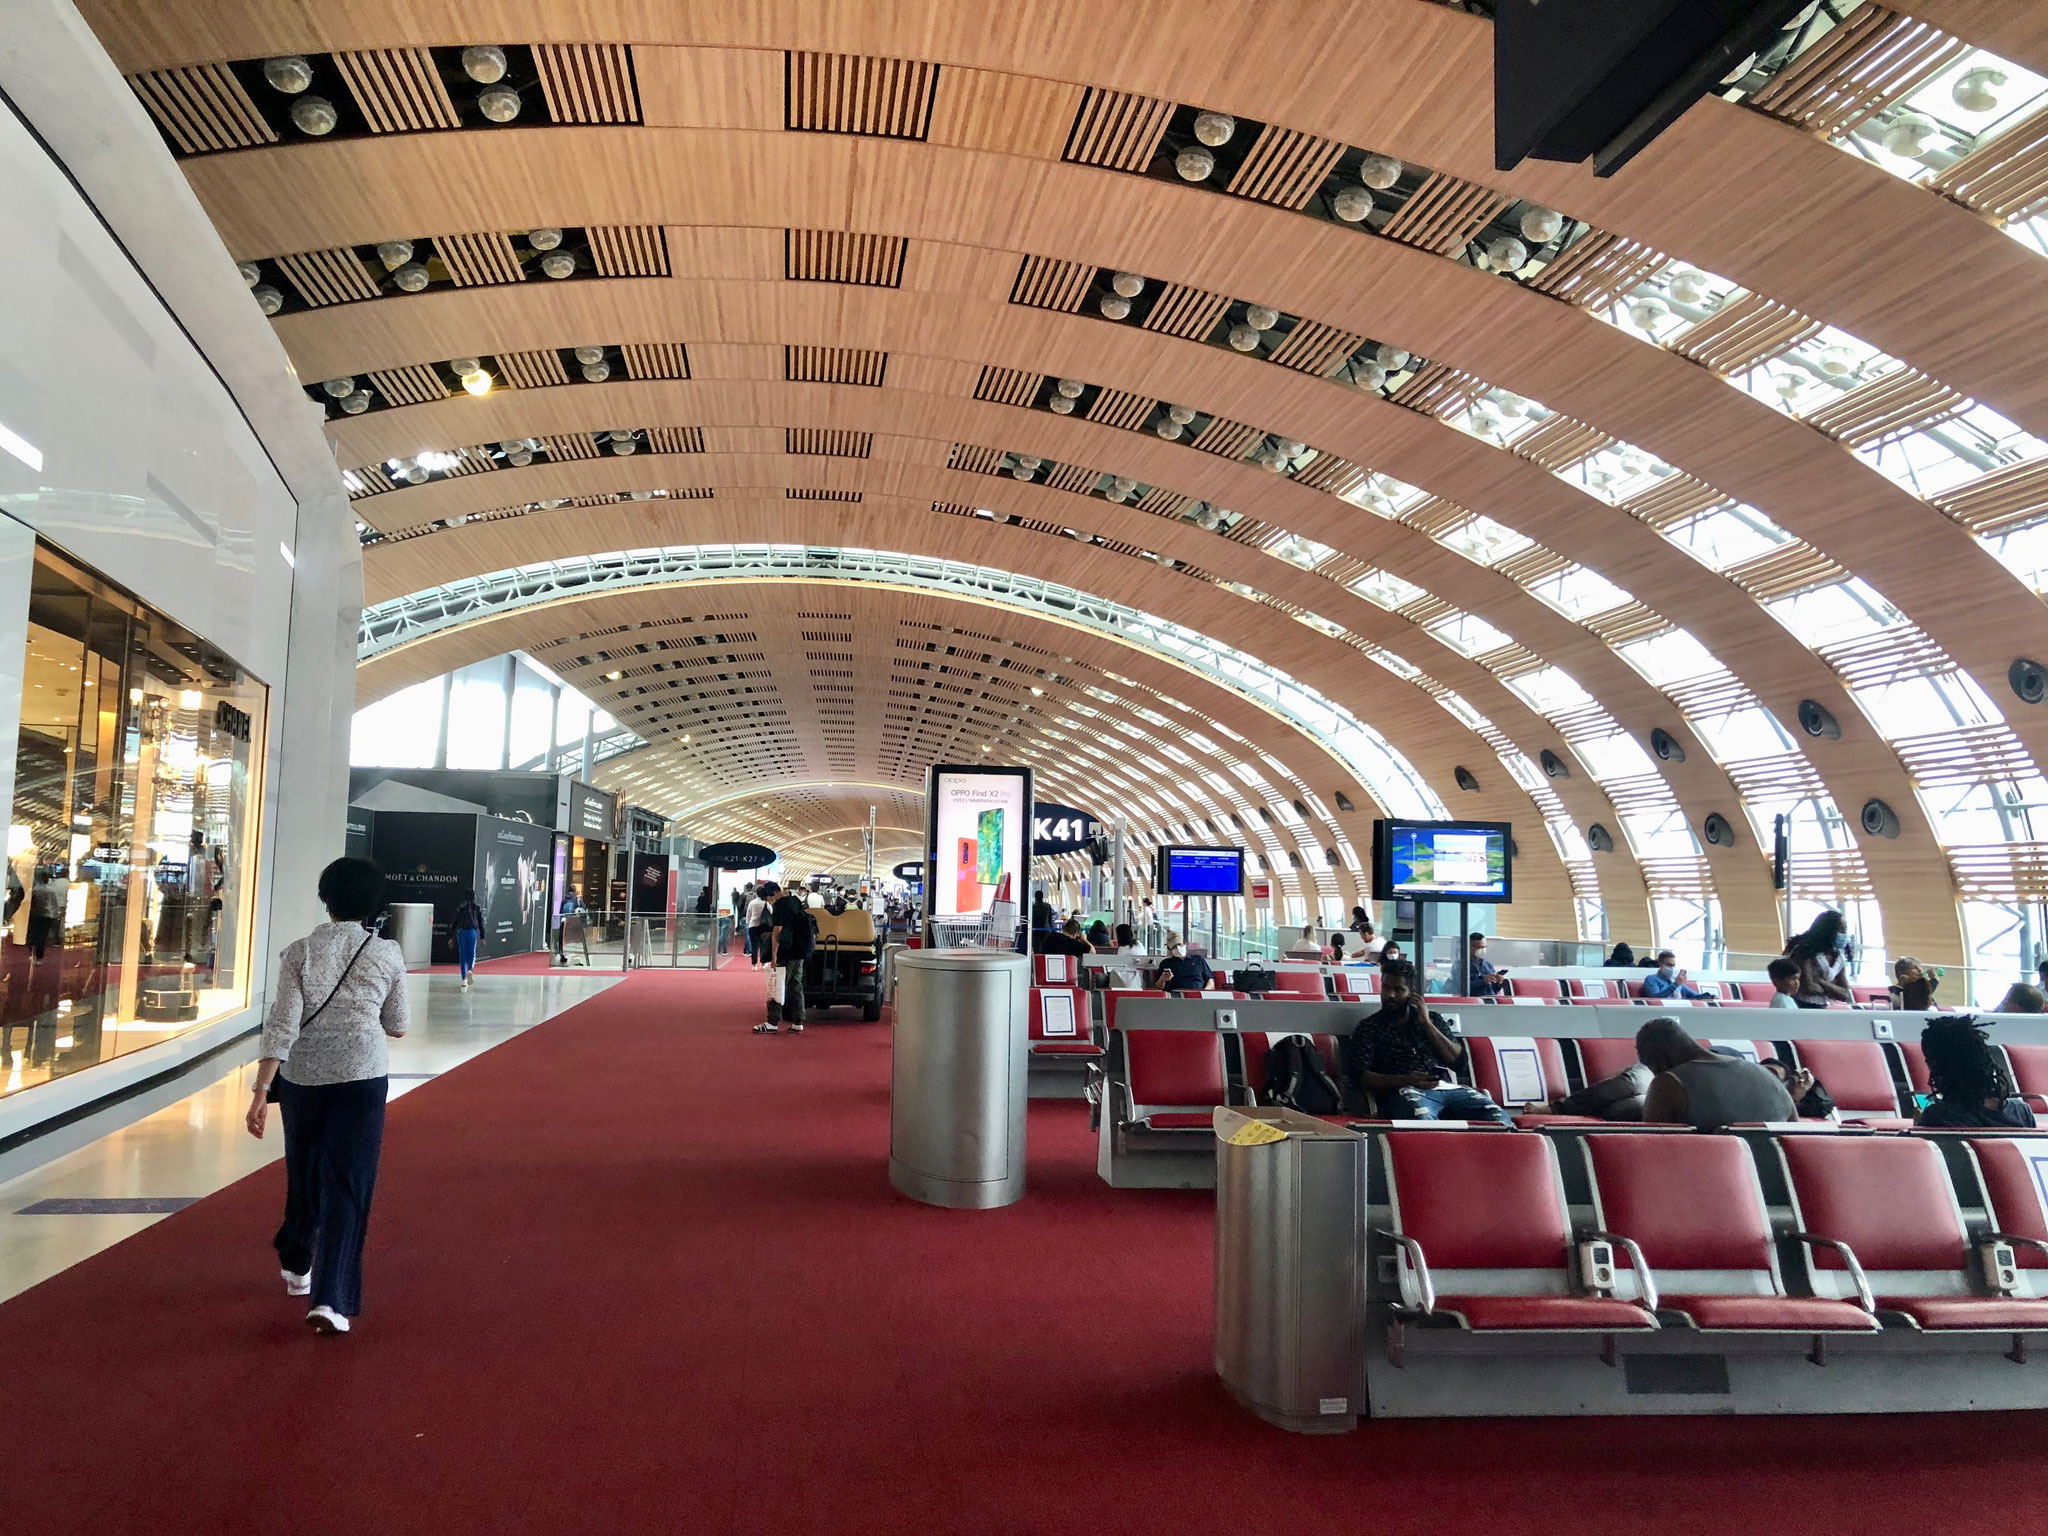 シャルル・ド・ゴール空港：日本人は10人ほどしか見かけなかった東京行きの搭乗口